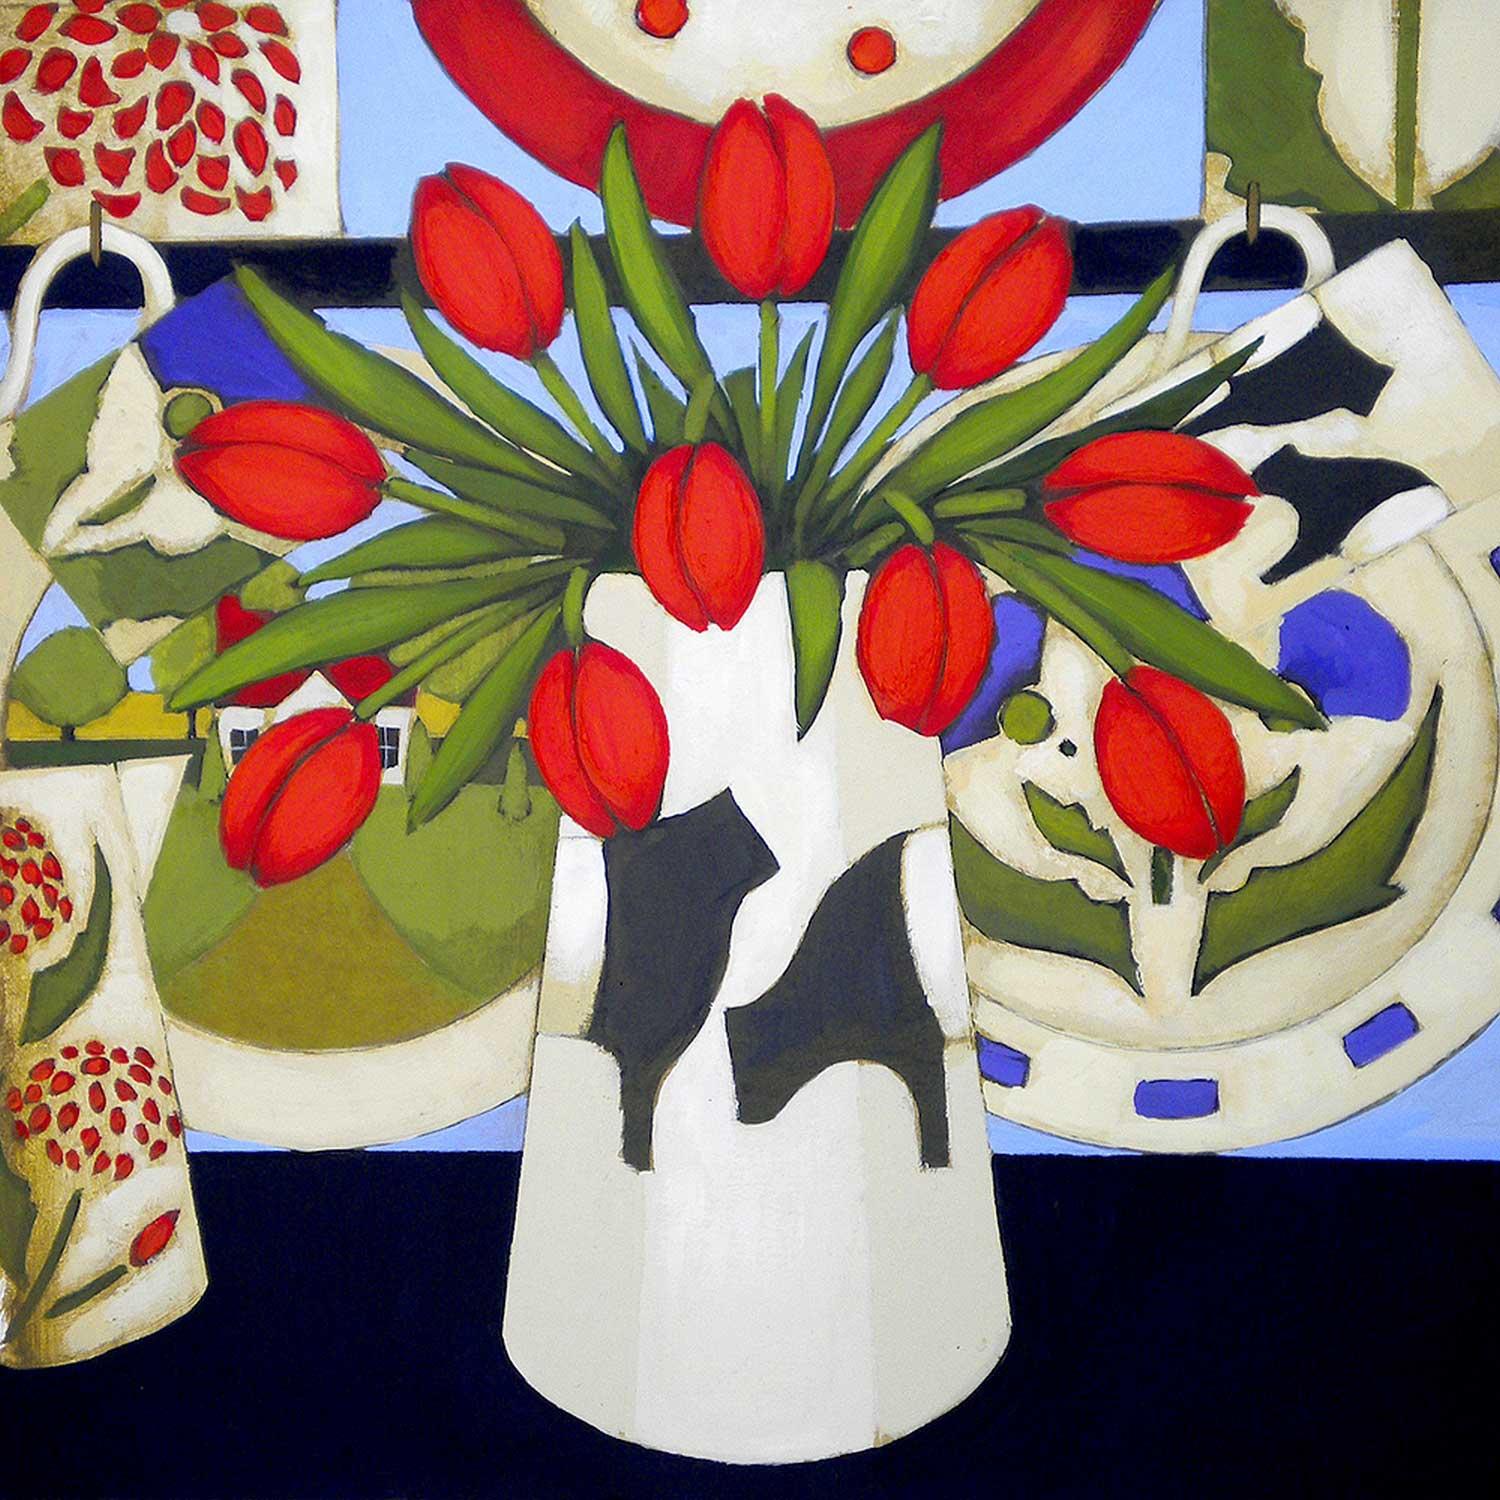 Tulips in a Beltie Vase by Fiona Millar